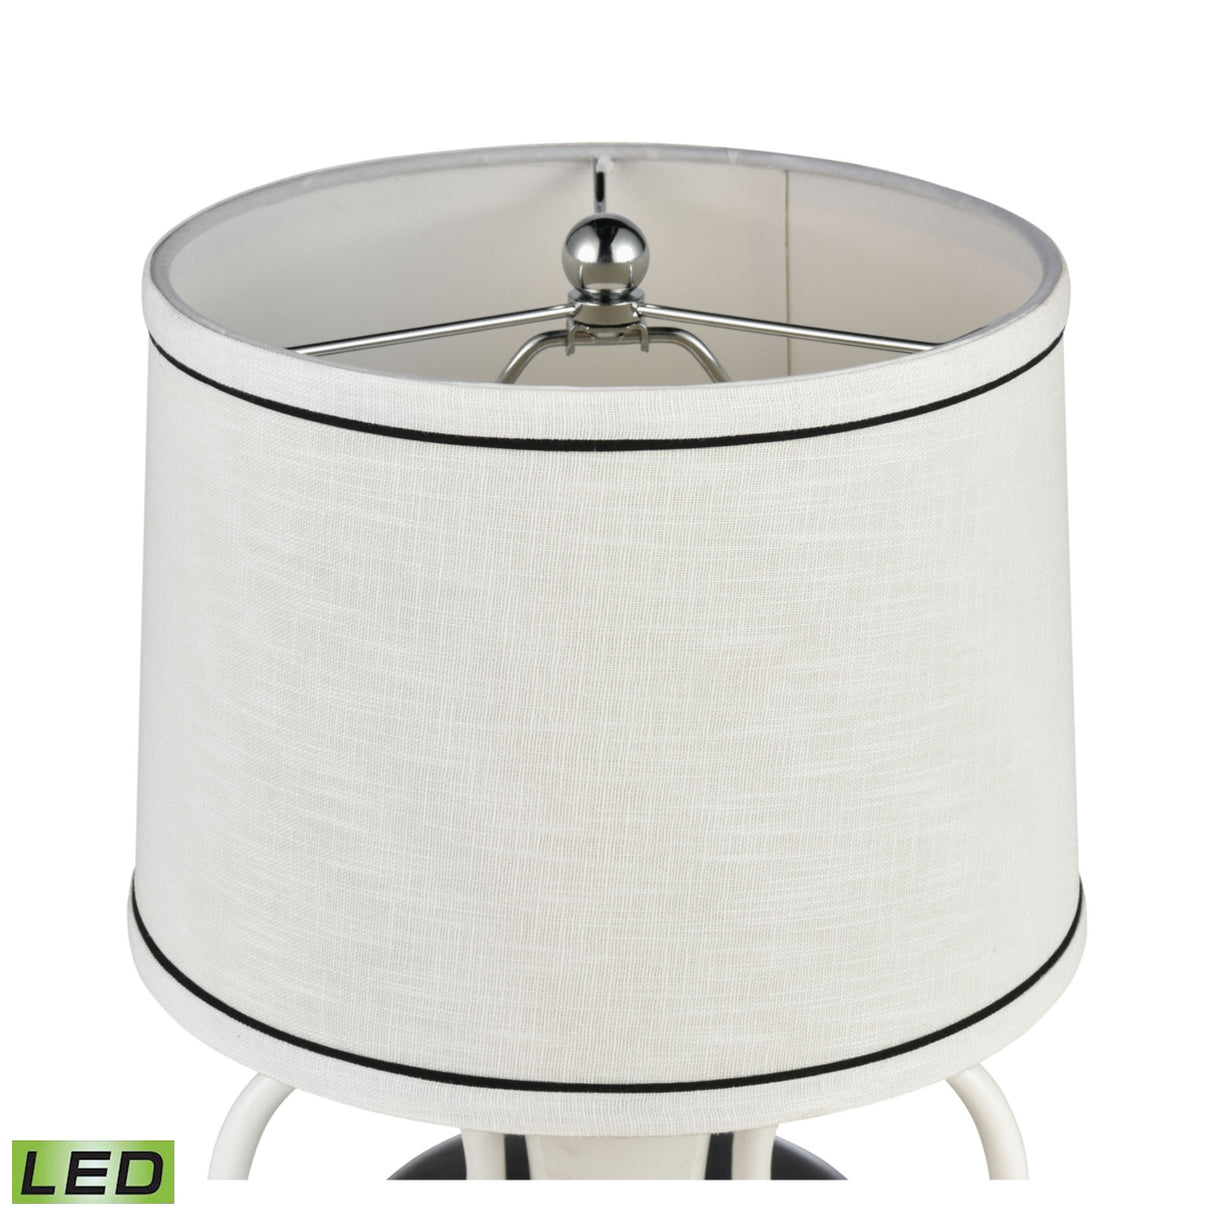 Elk H0019-7995-LED Luxor Gardens 18'' High 1-Light Table Lamp - White - Includes LED Bulb